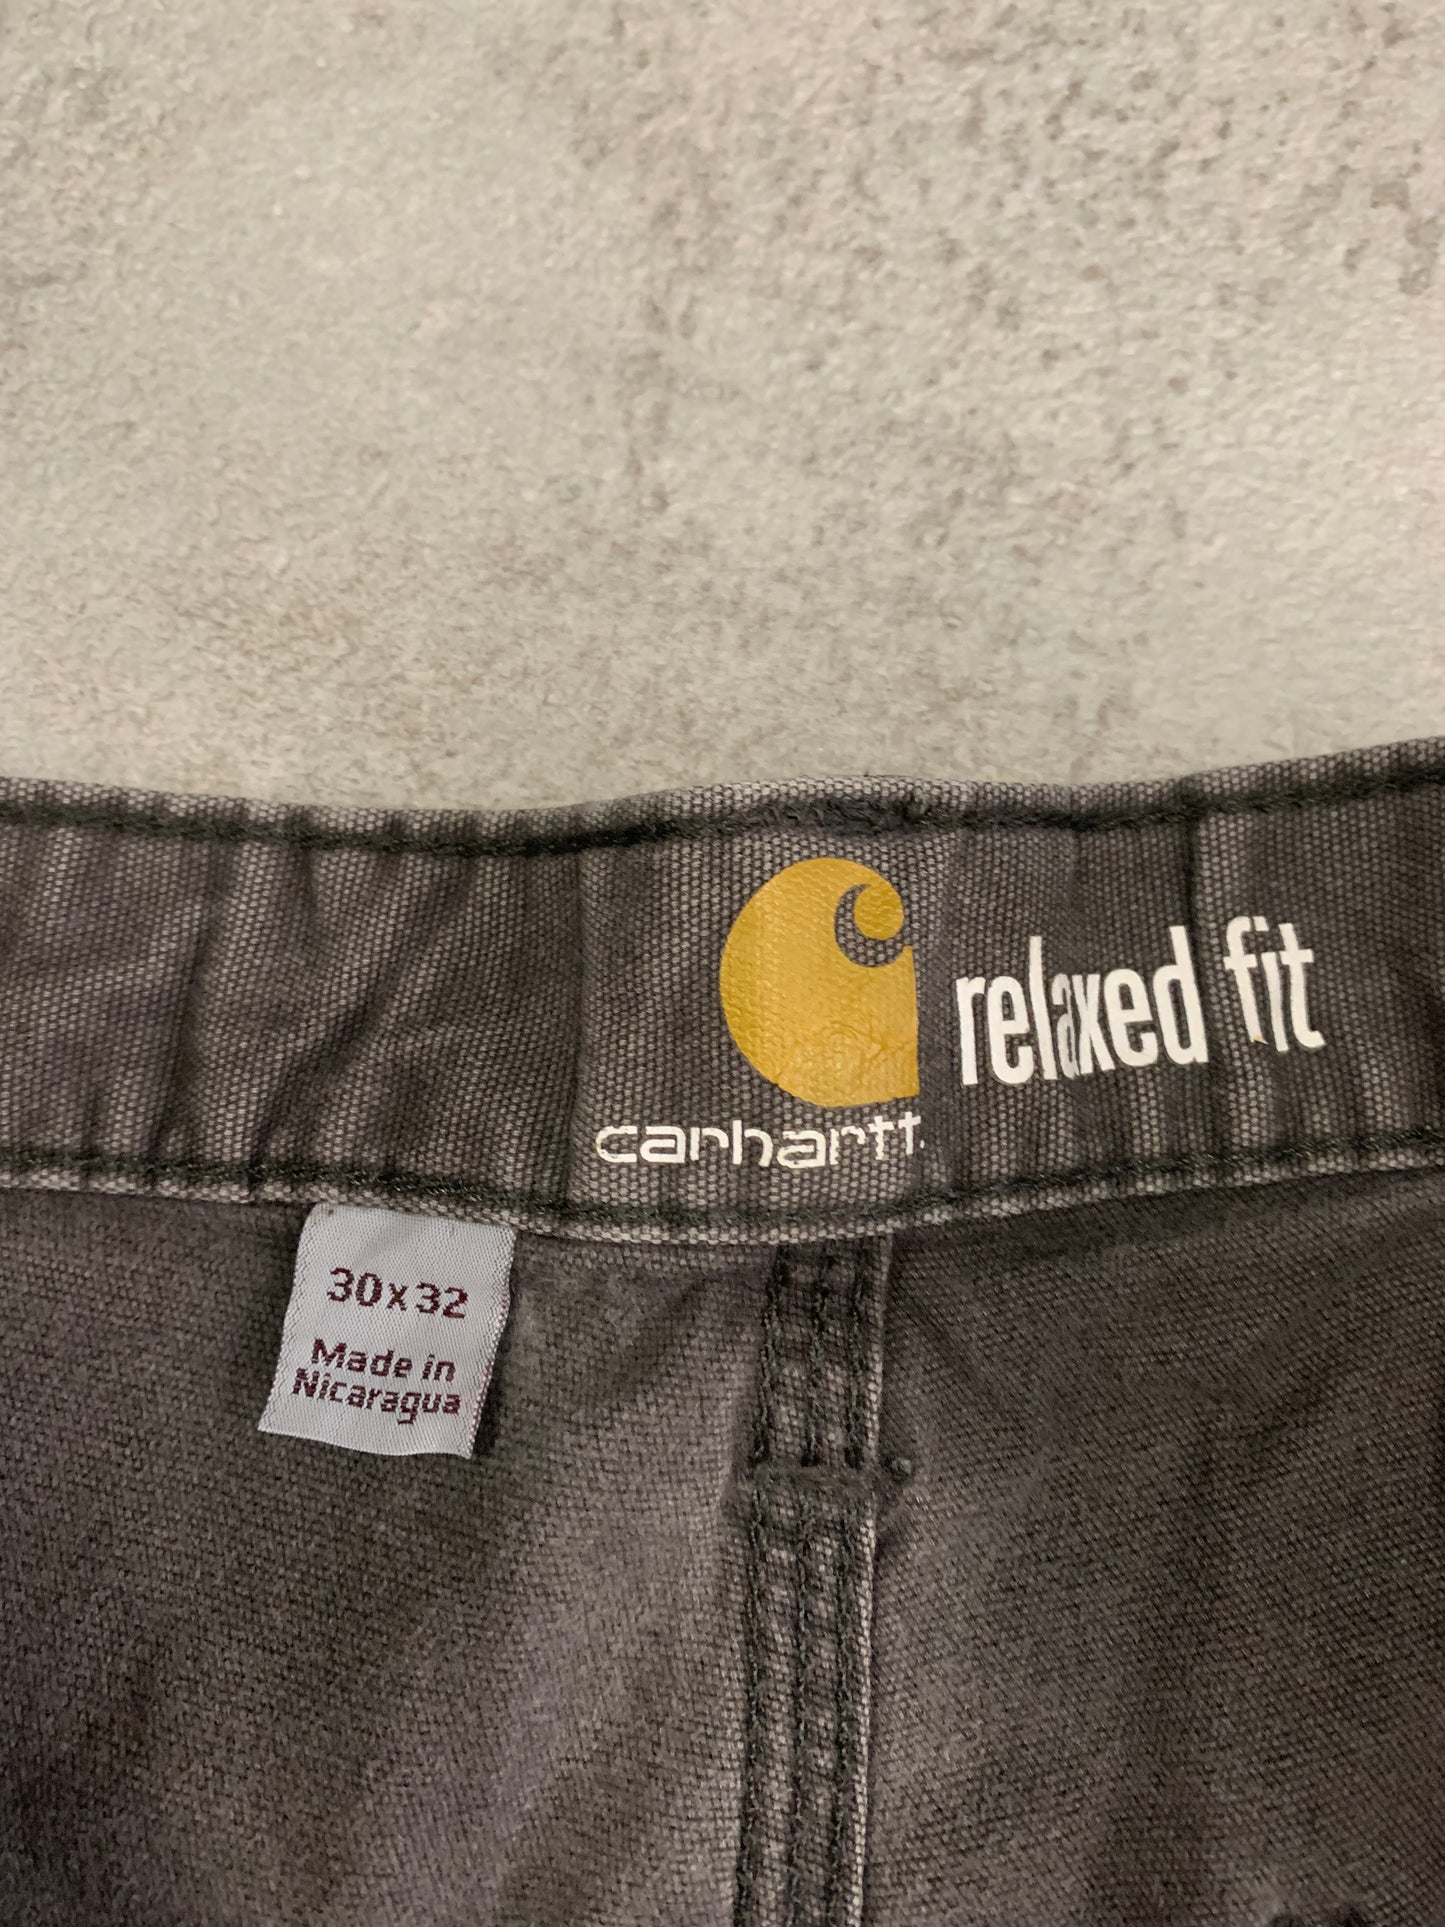 Vintage Carhartt Trashed Pants - M